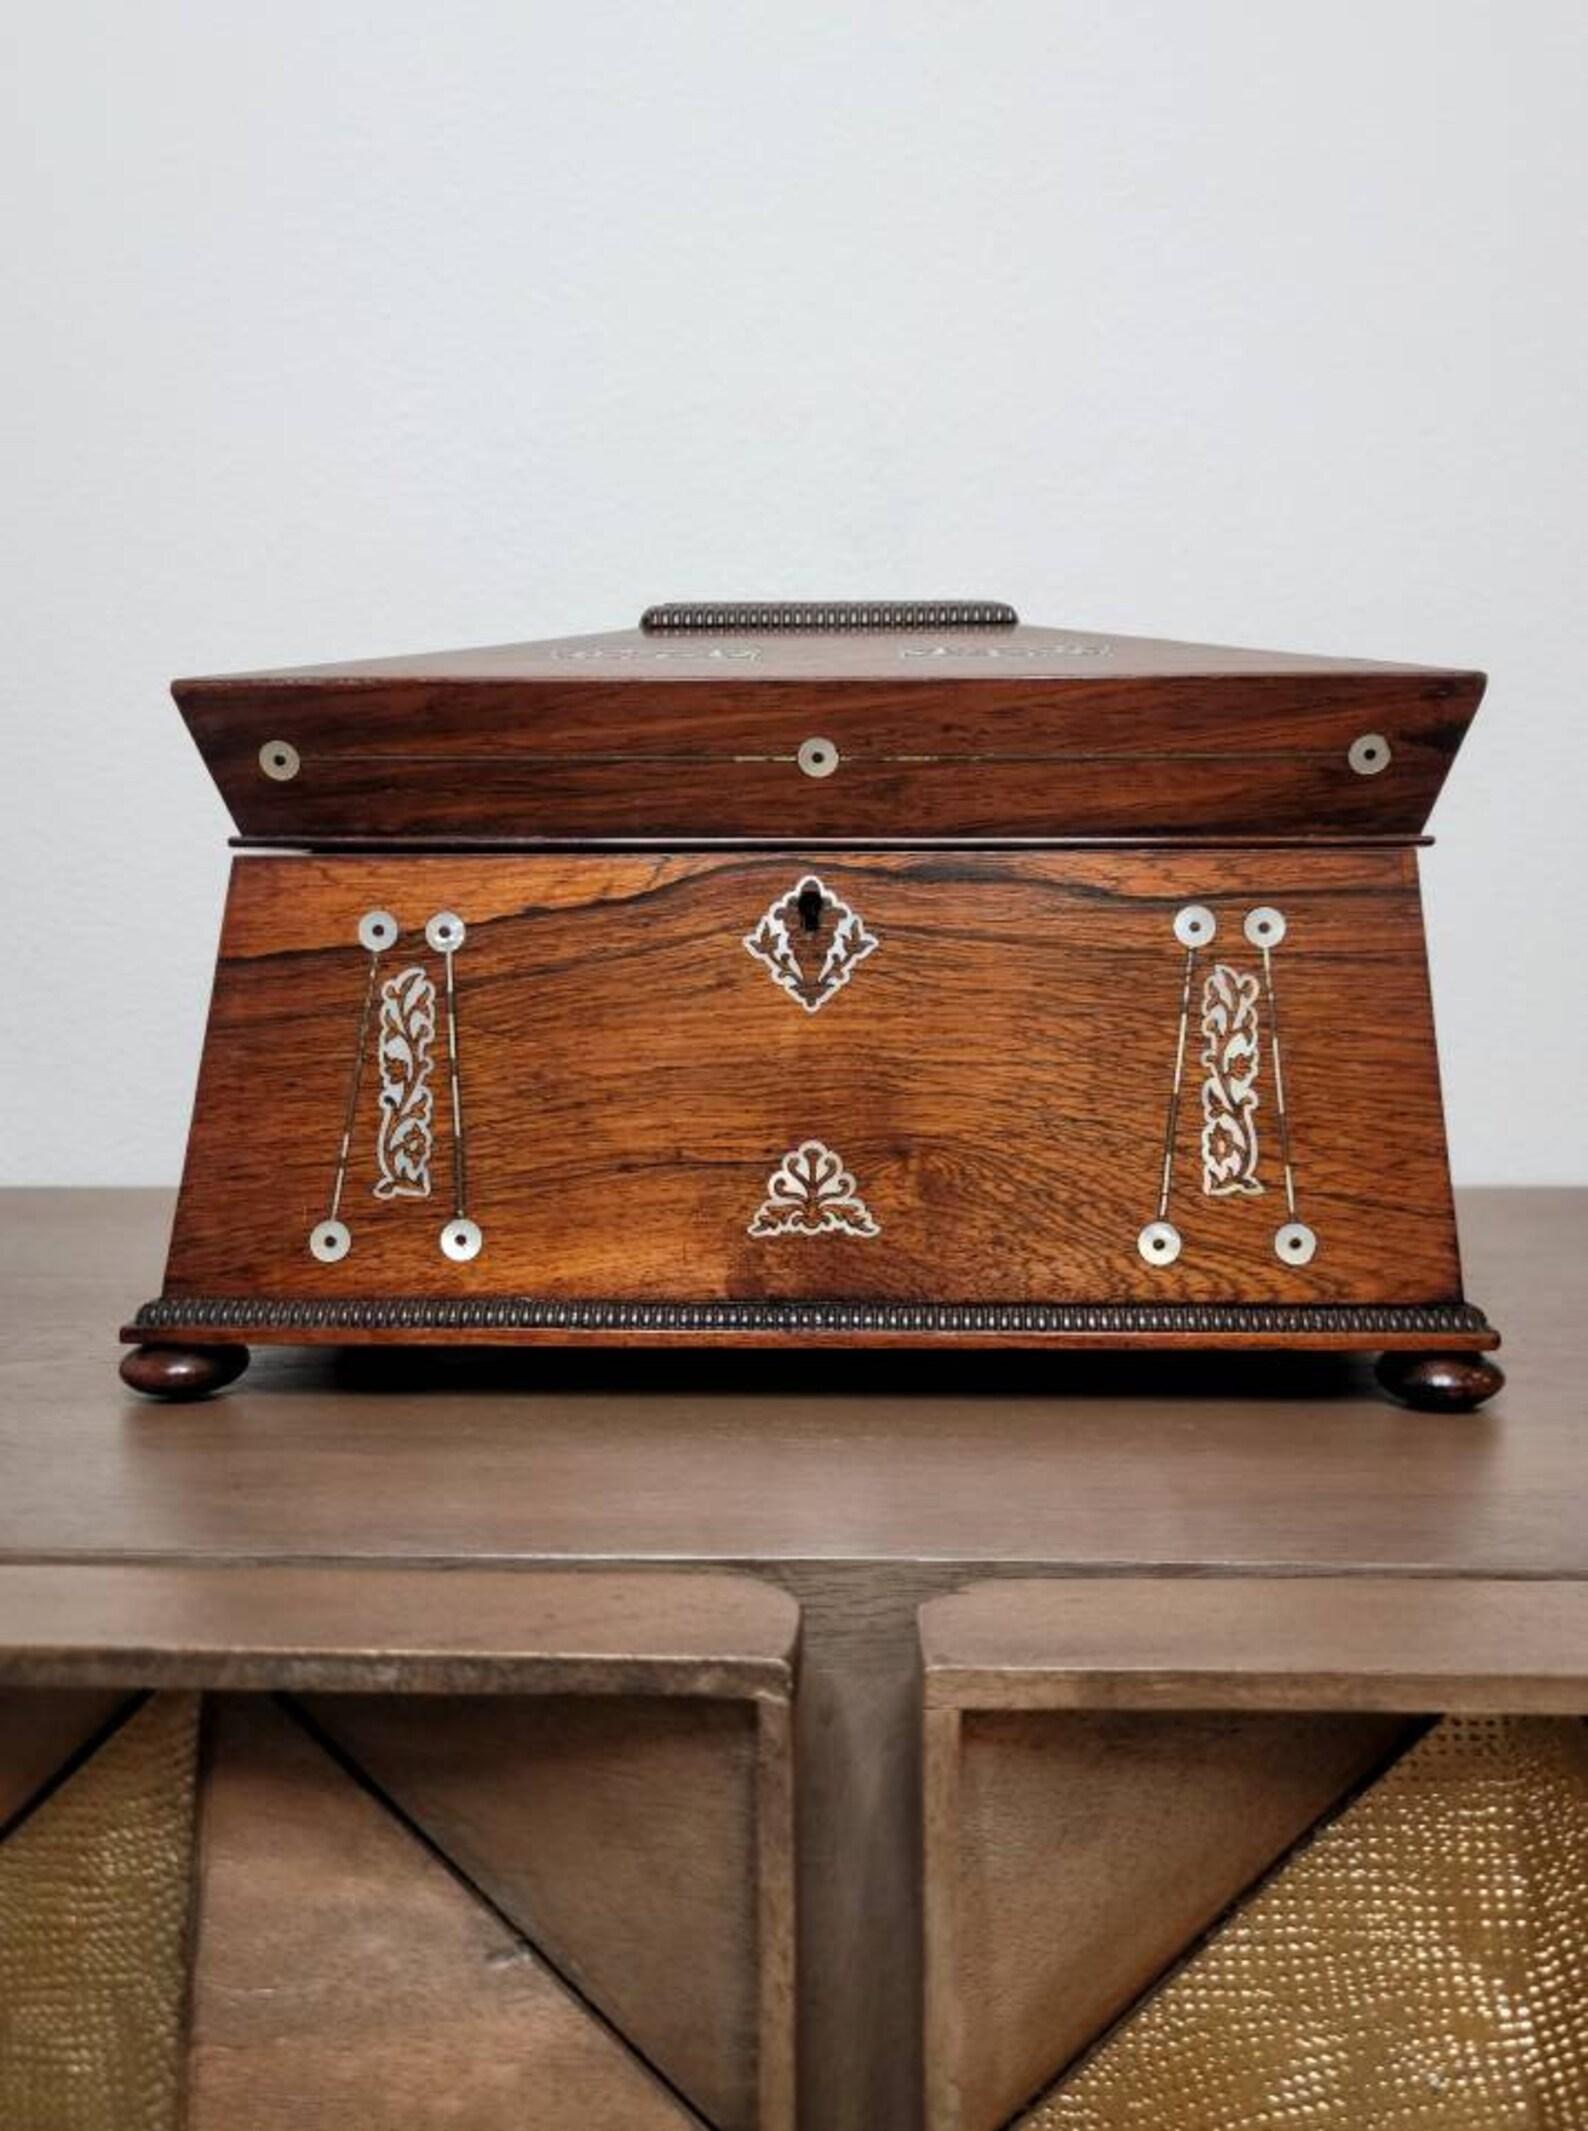 Une élégante boîte à thé d'époque Régence anglaise de qualité supérieure. Circa 1815

Né au début du 19e siècle, ce meuble en forme de sarcophage rectangulaire a été fabriqué à la main à partir des meilleurs bois de rose exotiques. Il est orné